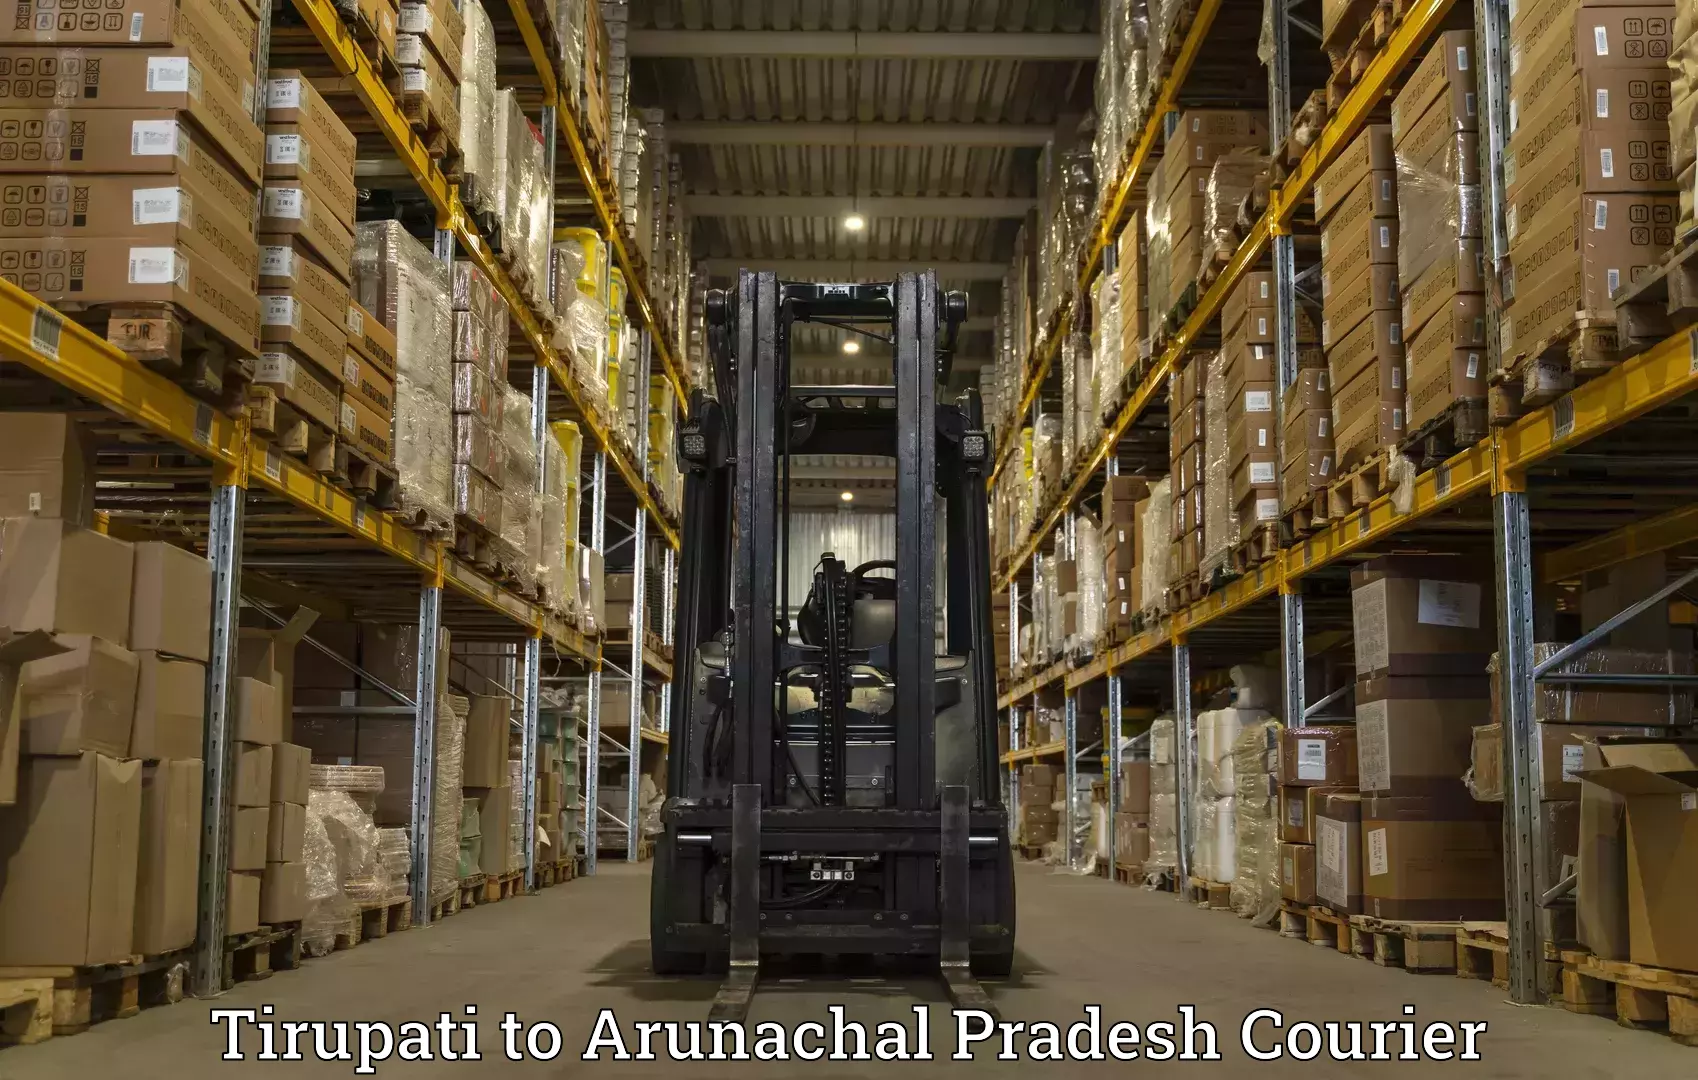 International courier networks Tirupati to Arunachal Pradesh